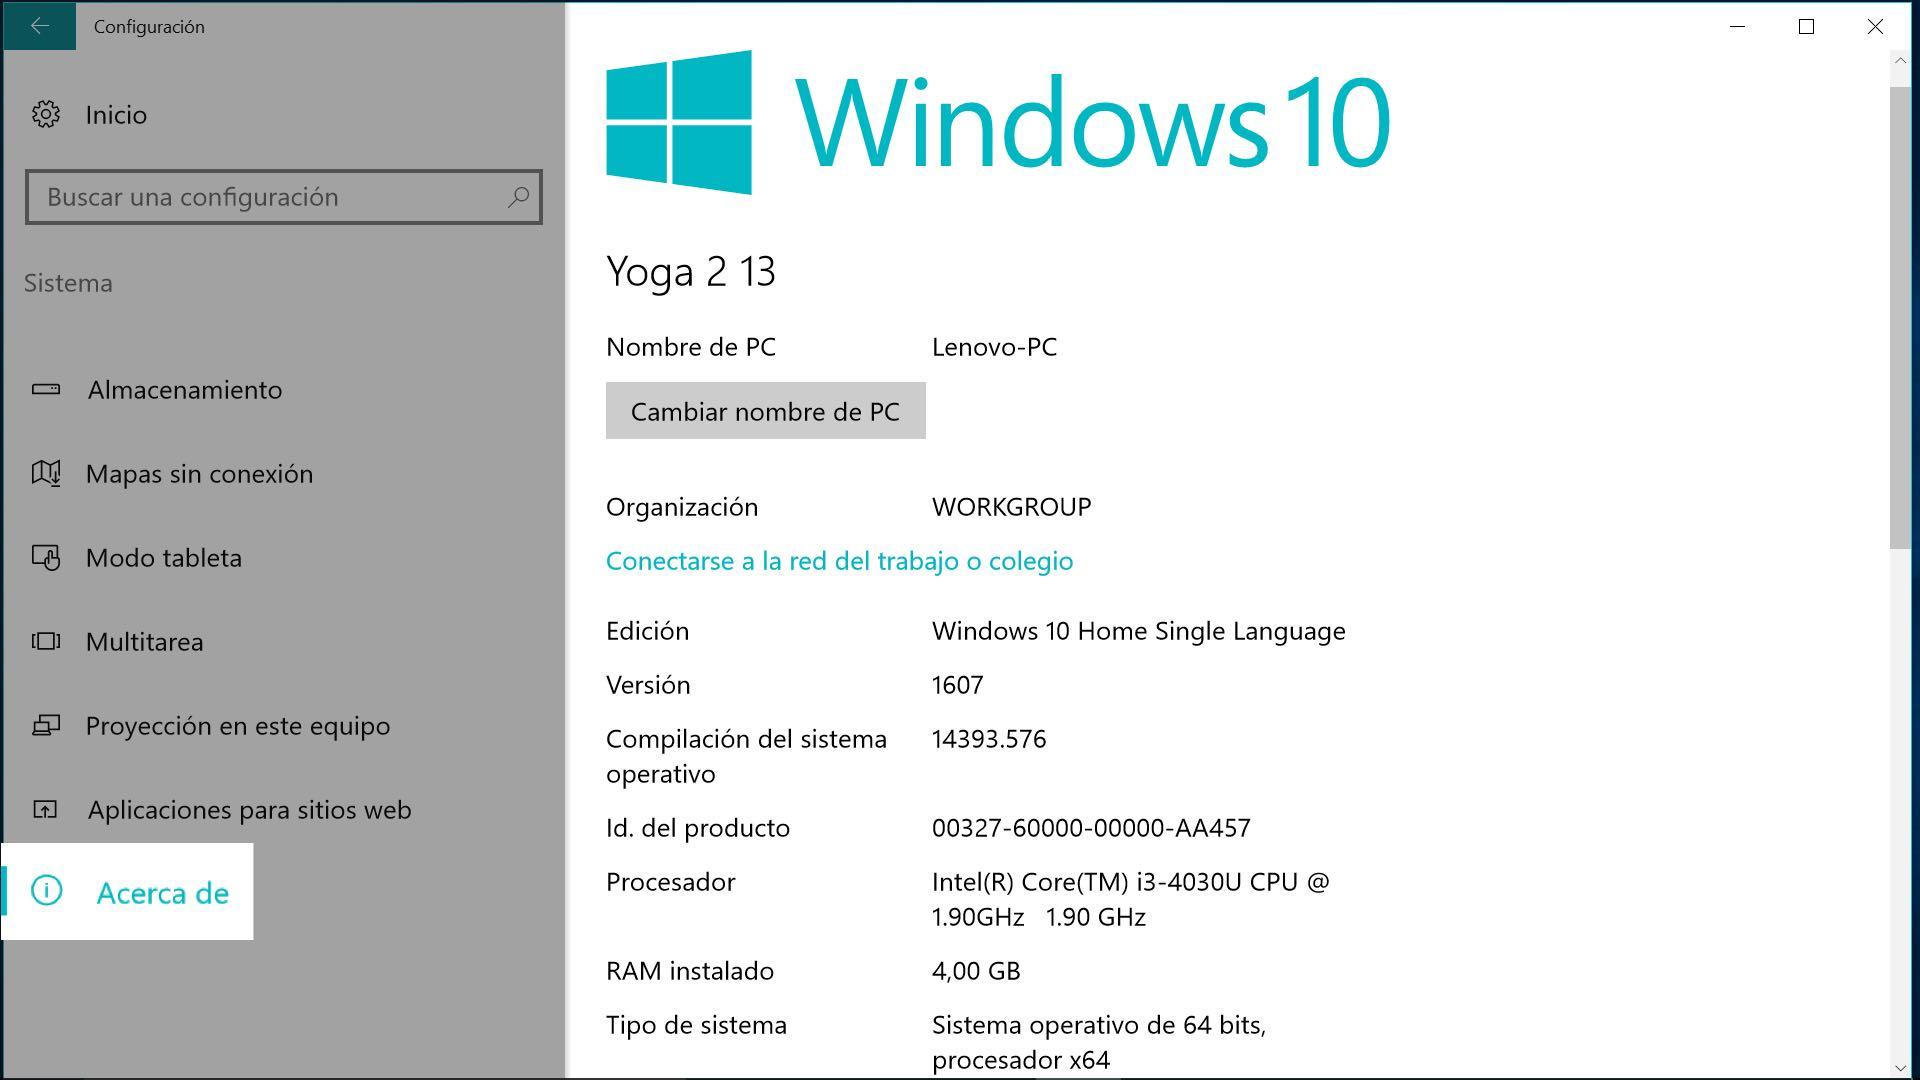 ¿Qué es una imagen del sistema en Windows 10?